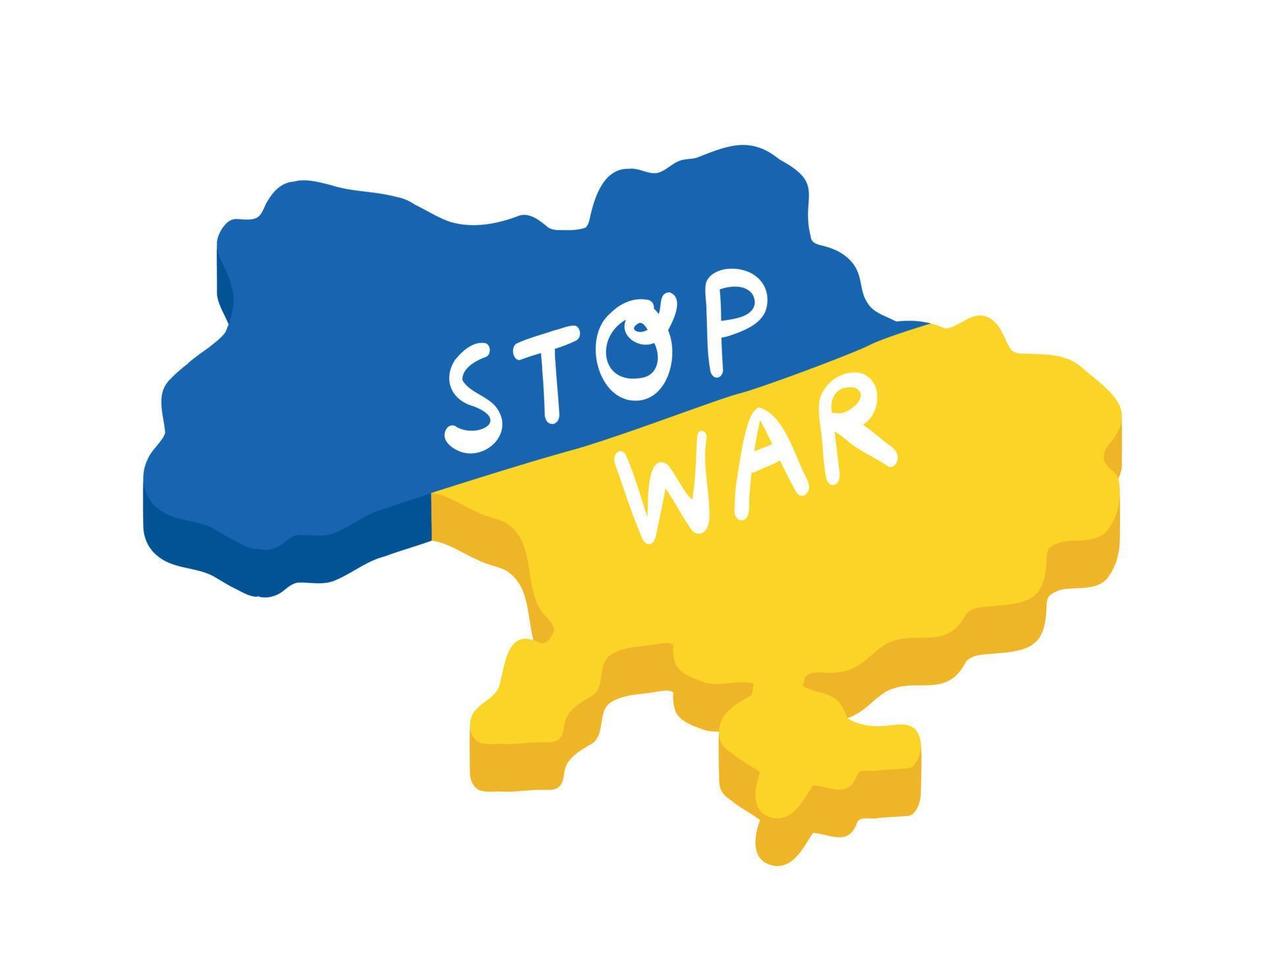 mapa da ucrânia, parar a guerra, rezar pela ucrânia, paz pela ucrânia vetor